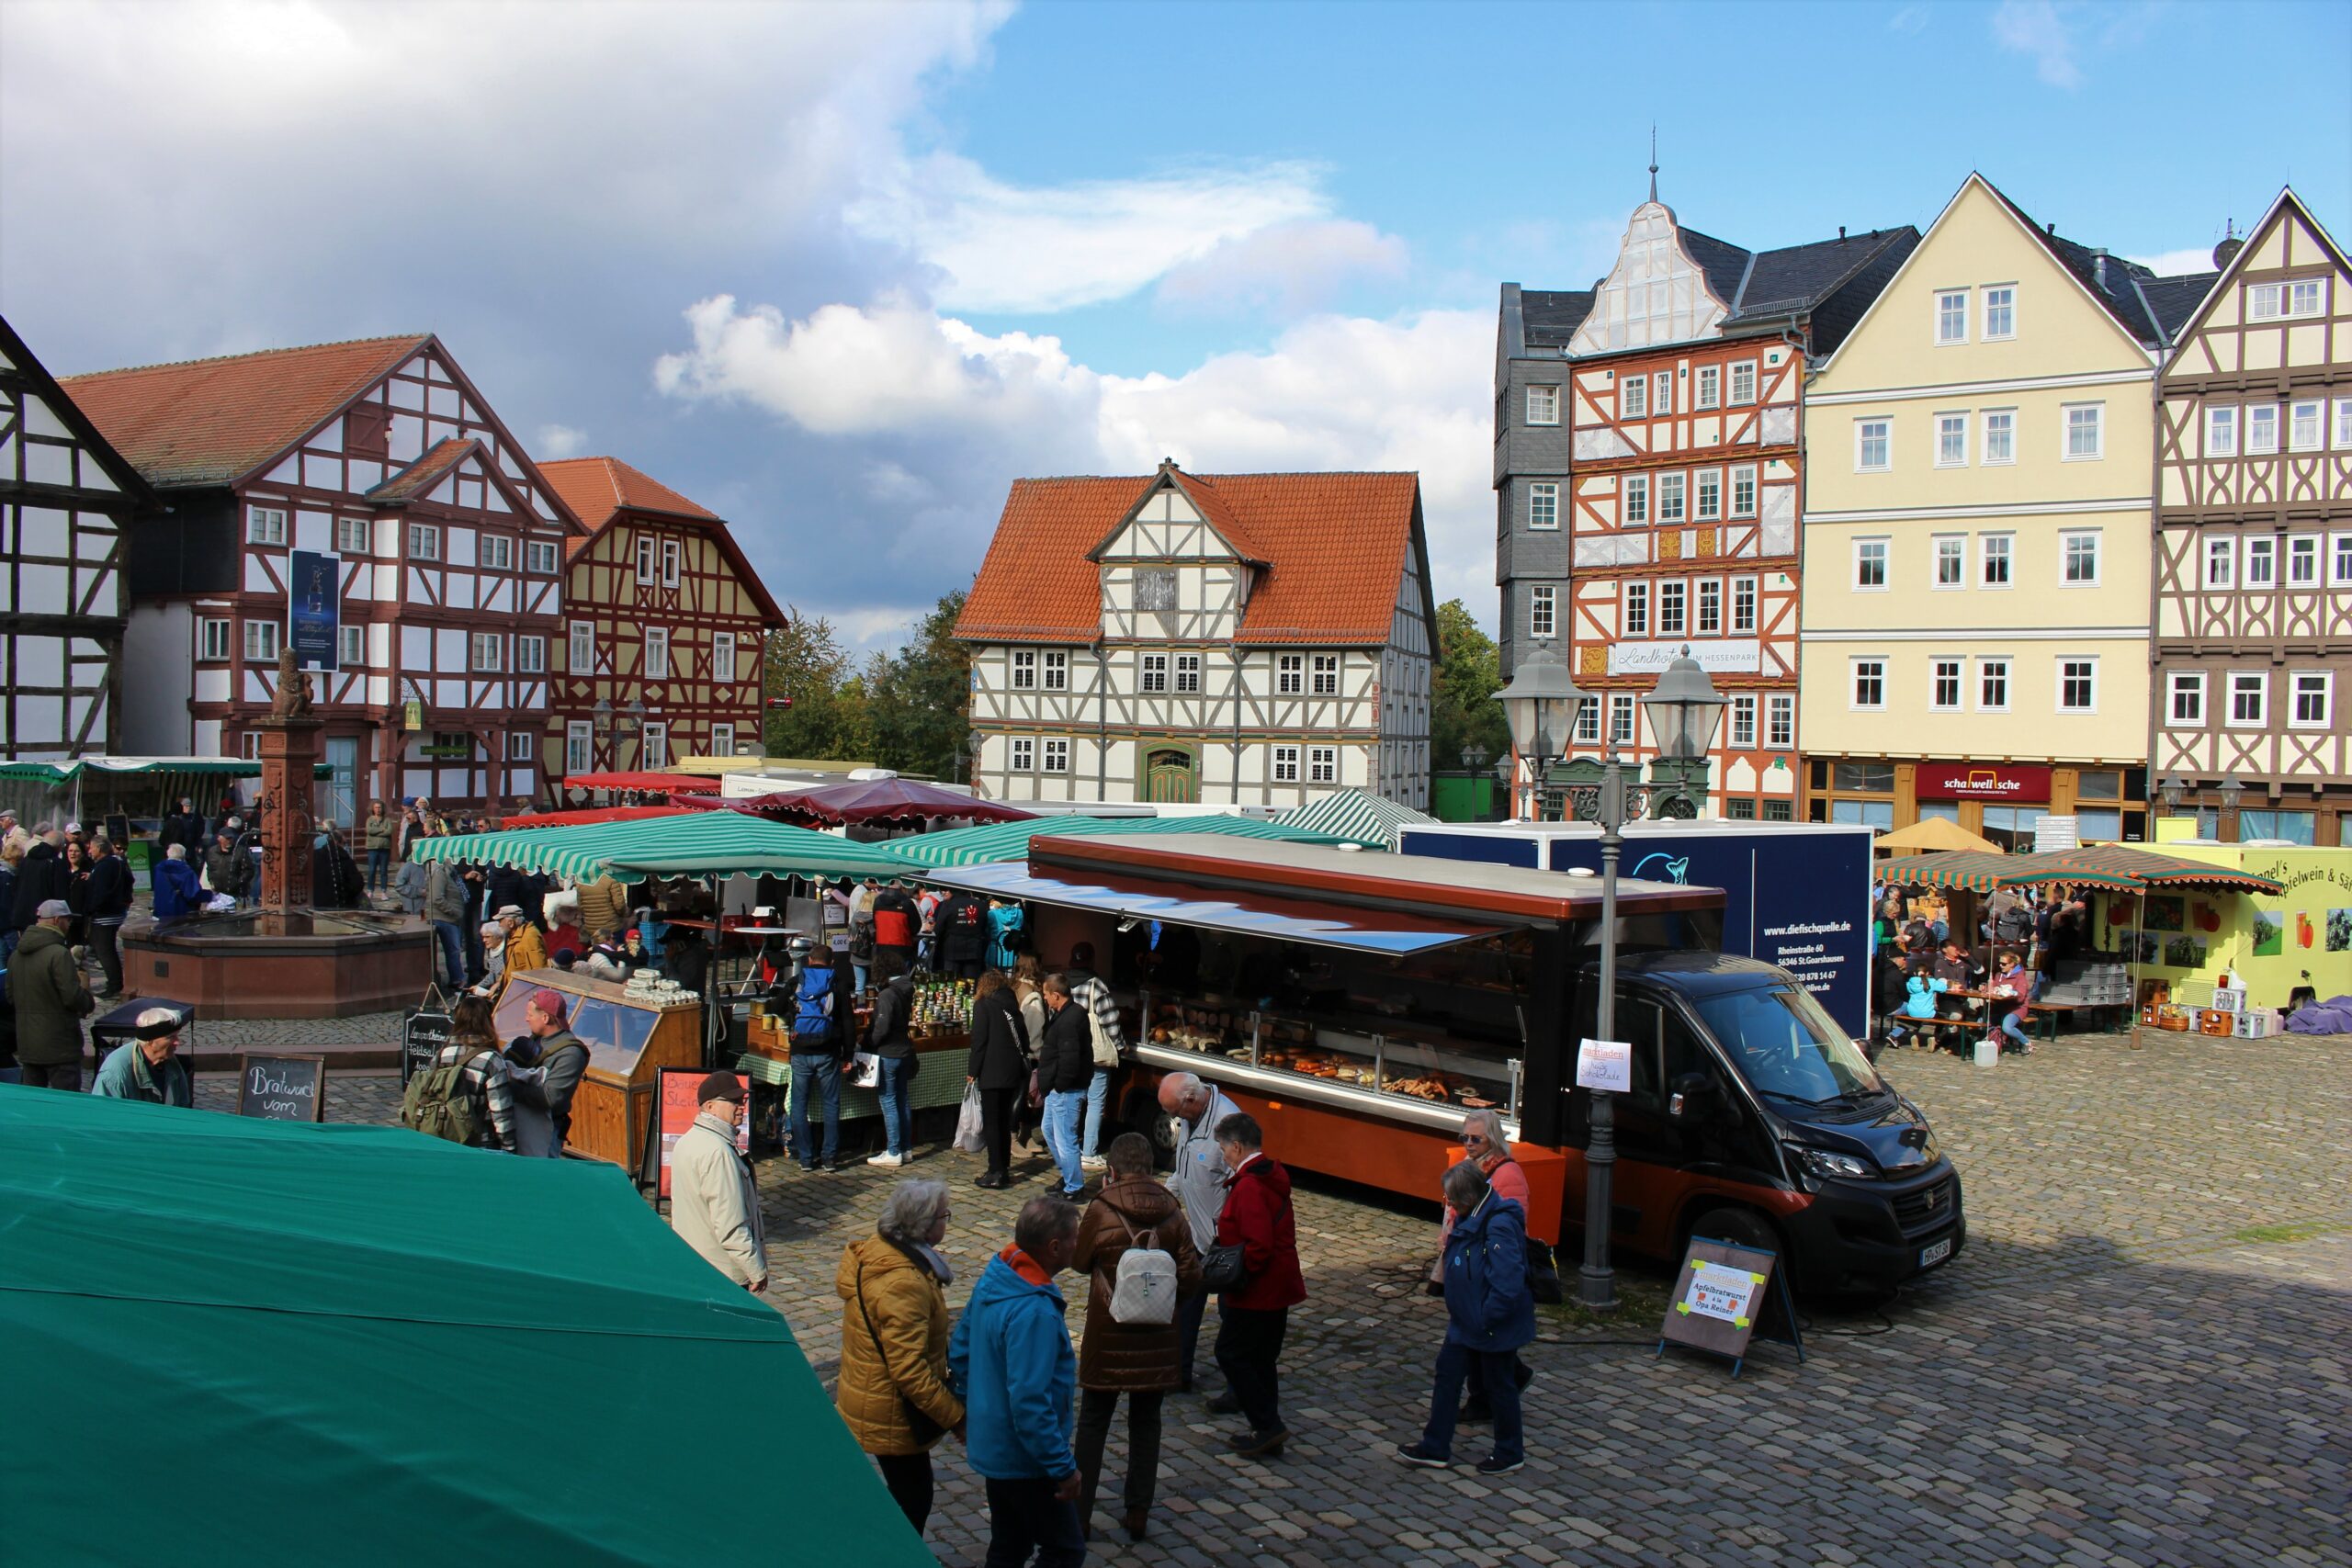 Bauernmarkt im Hessenpark, Stände auf dem Marktplatz